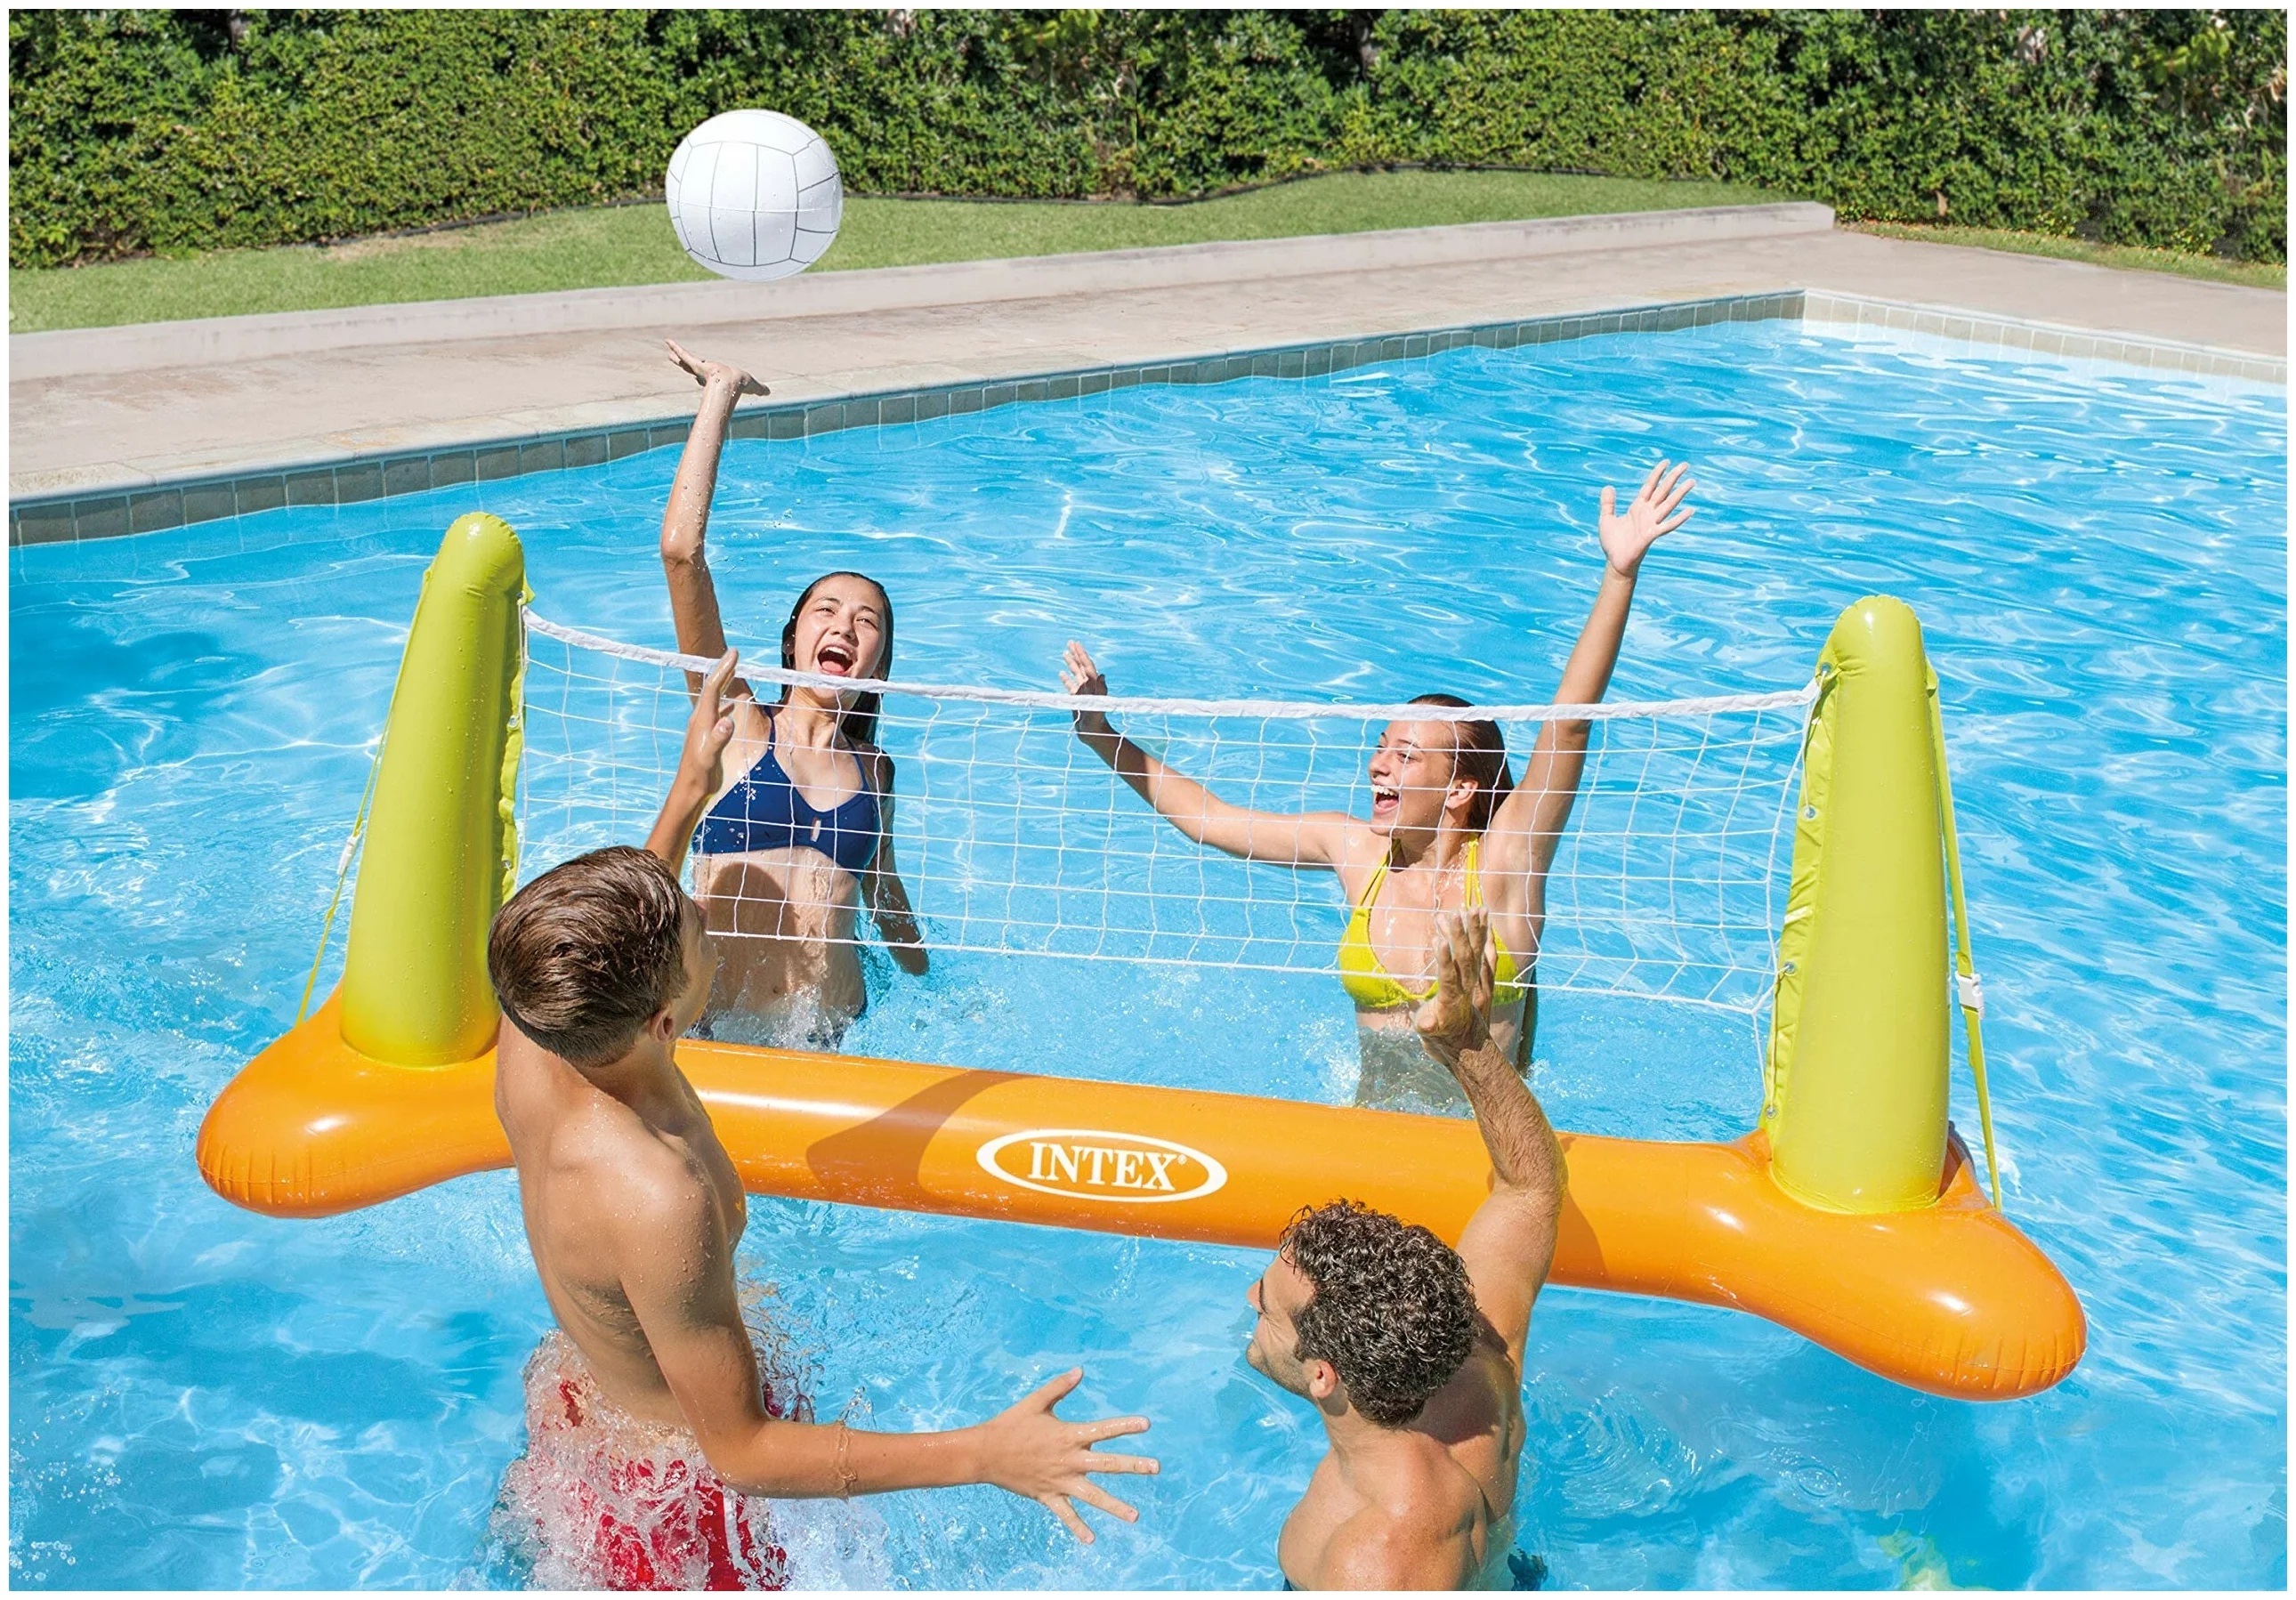 Este set de volley para piscina de la marca Intex es uno de los chollos de esta semana en Amazon.